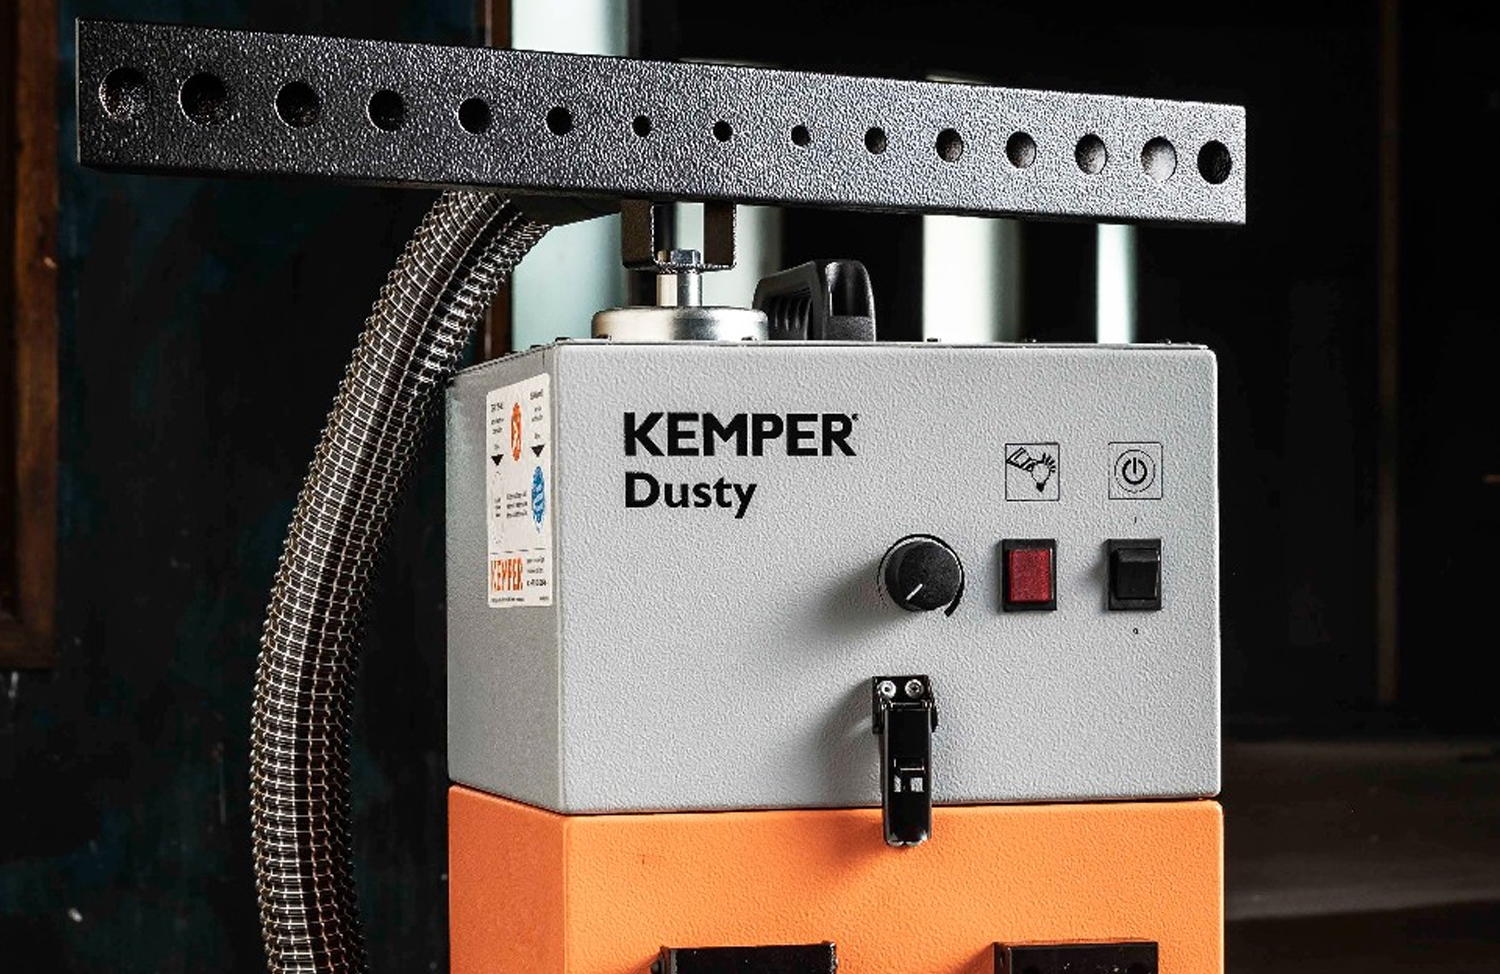 Dettaglio aspiratore FilterCell XL Kemper